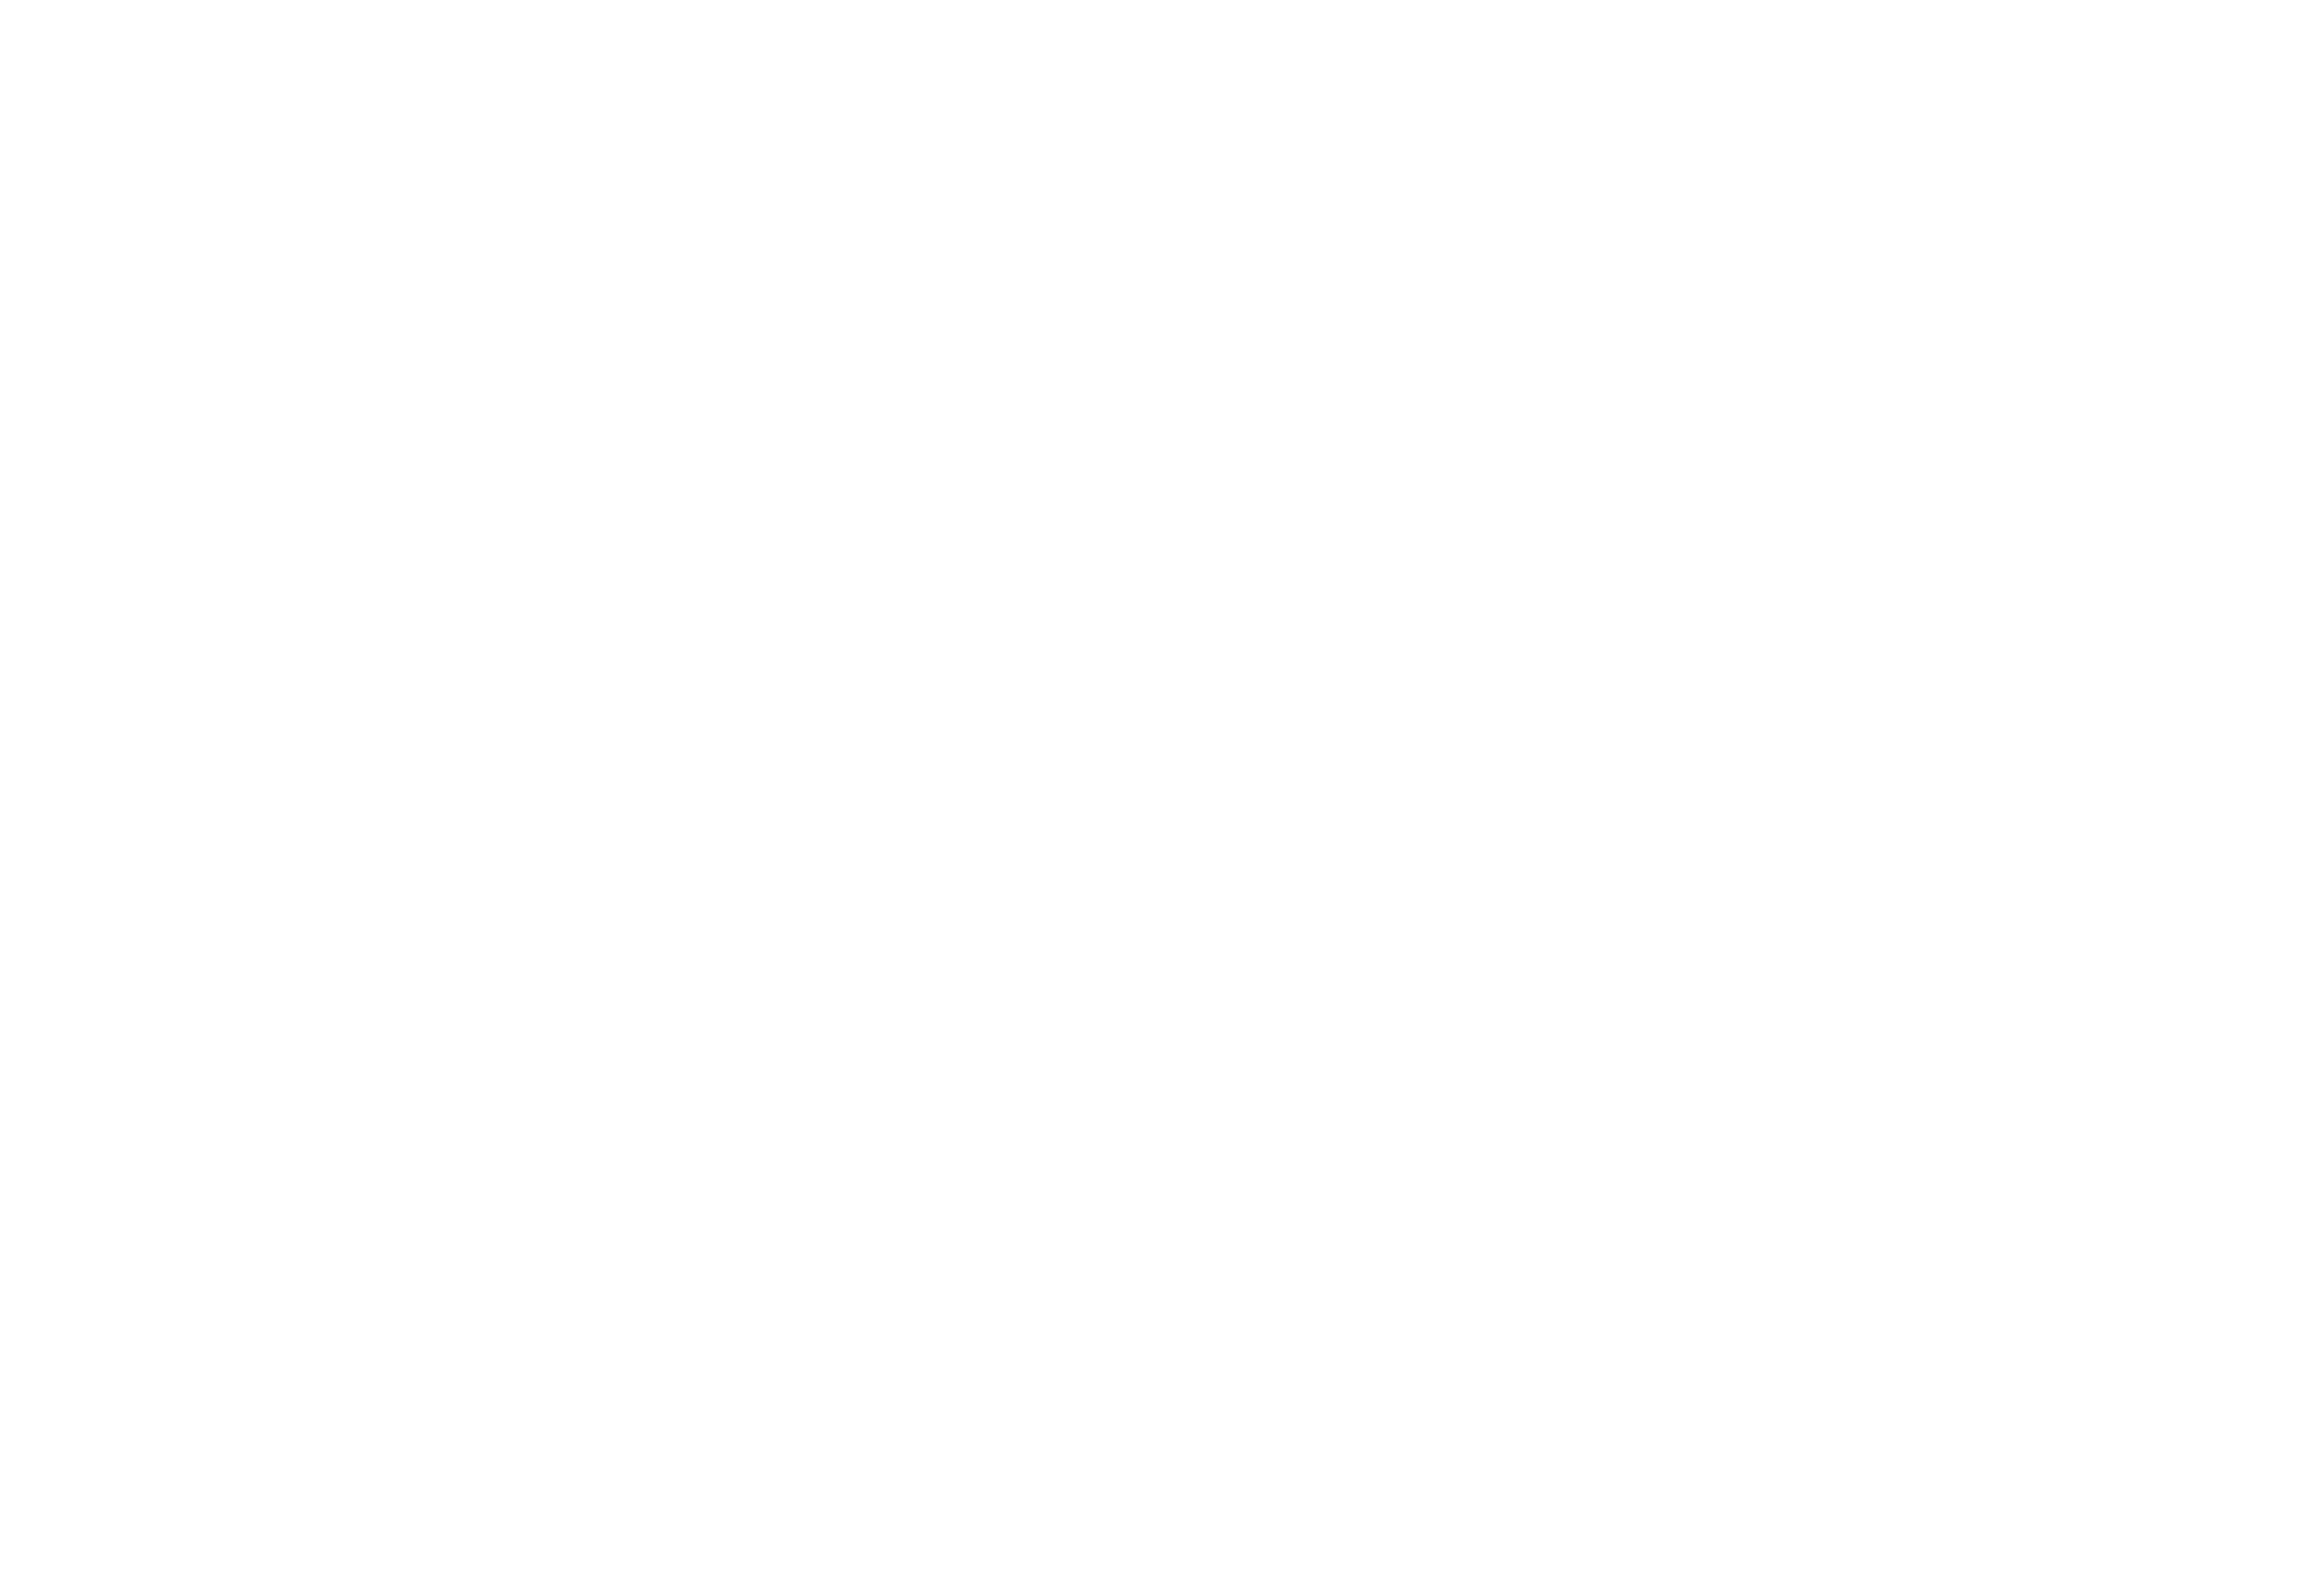 Alex Otaola For Mayor of Miami-Dade